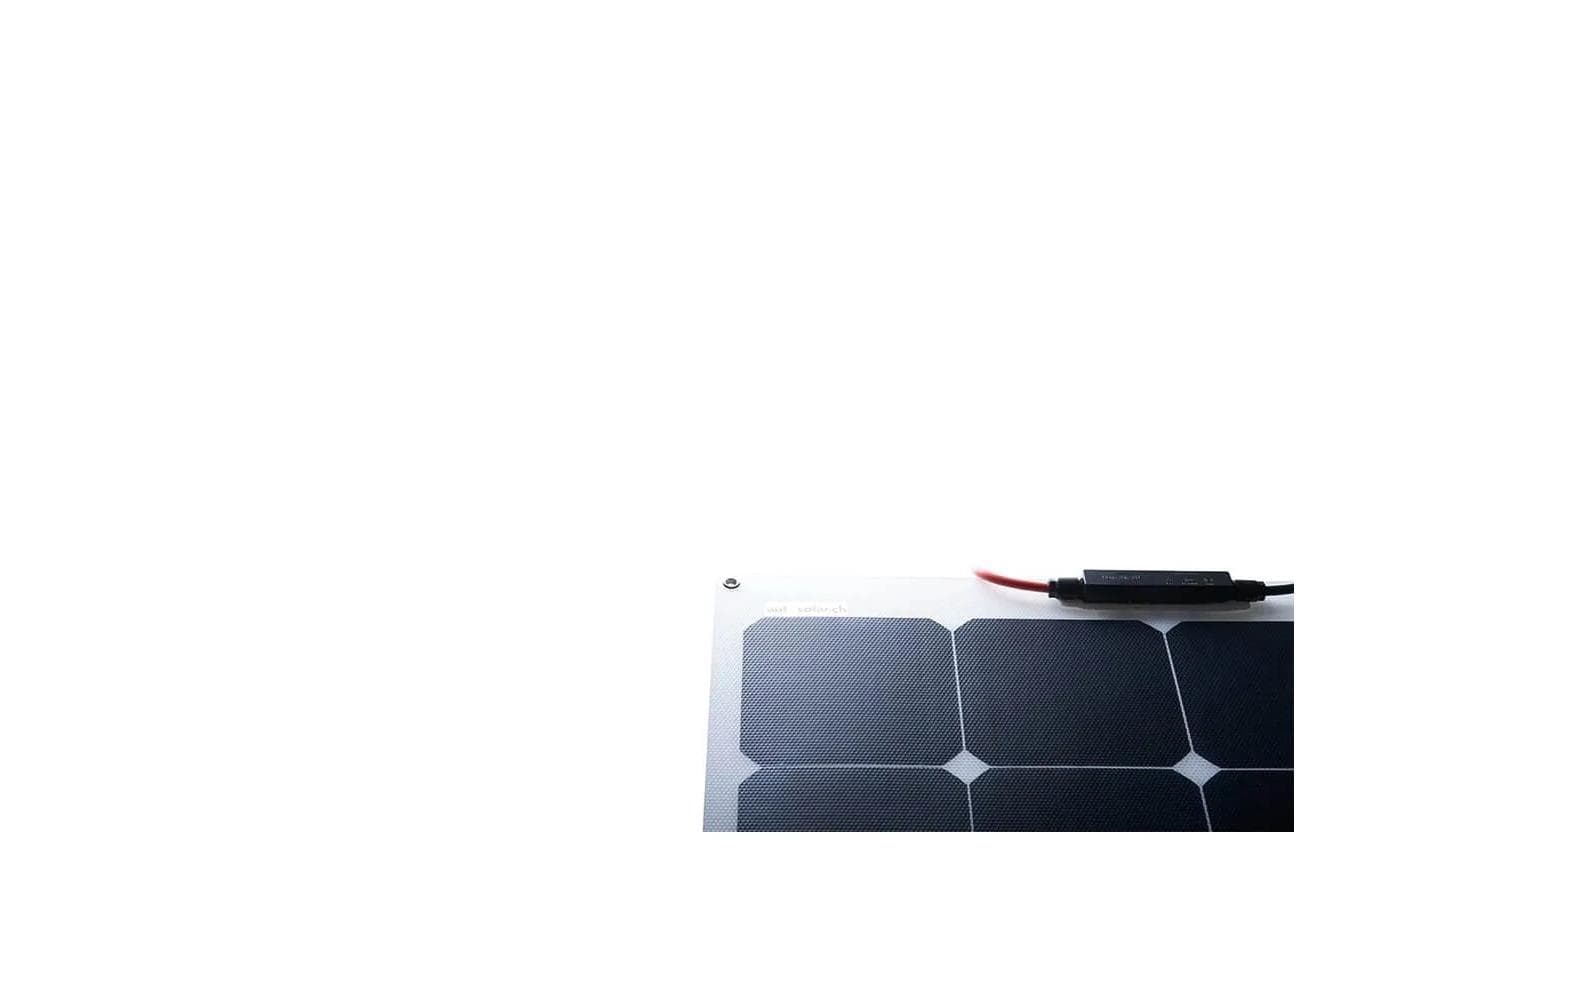 autosolar Solarpanel flexibel 160 W, IP65, MC4